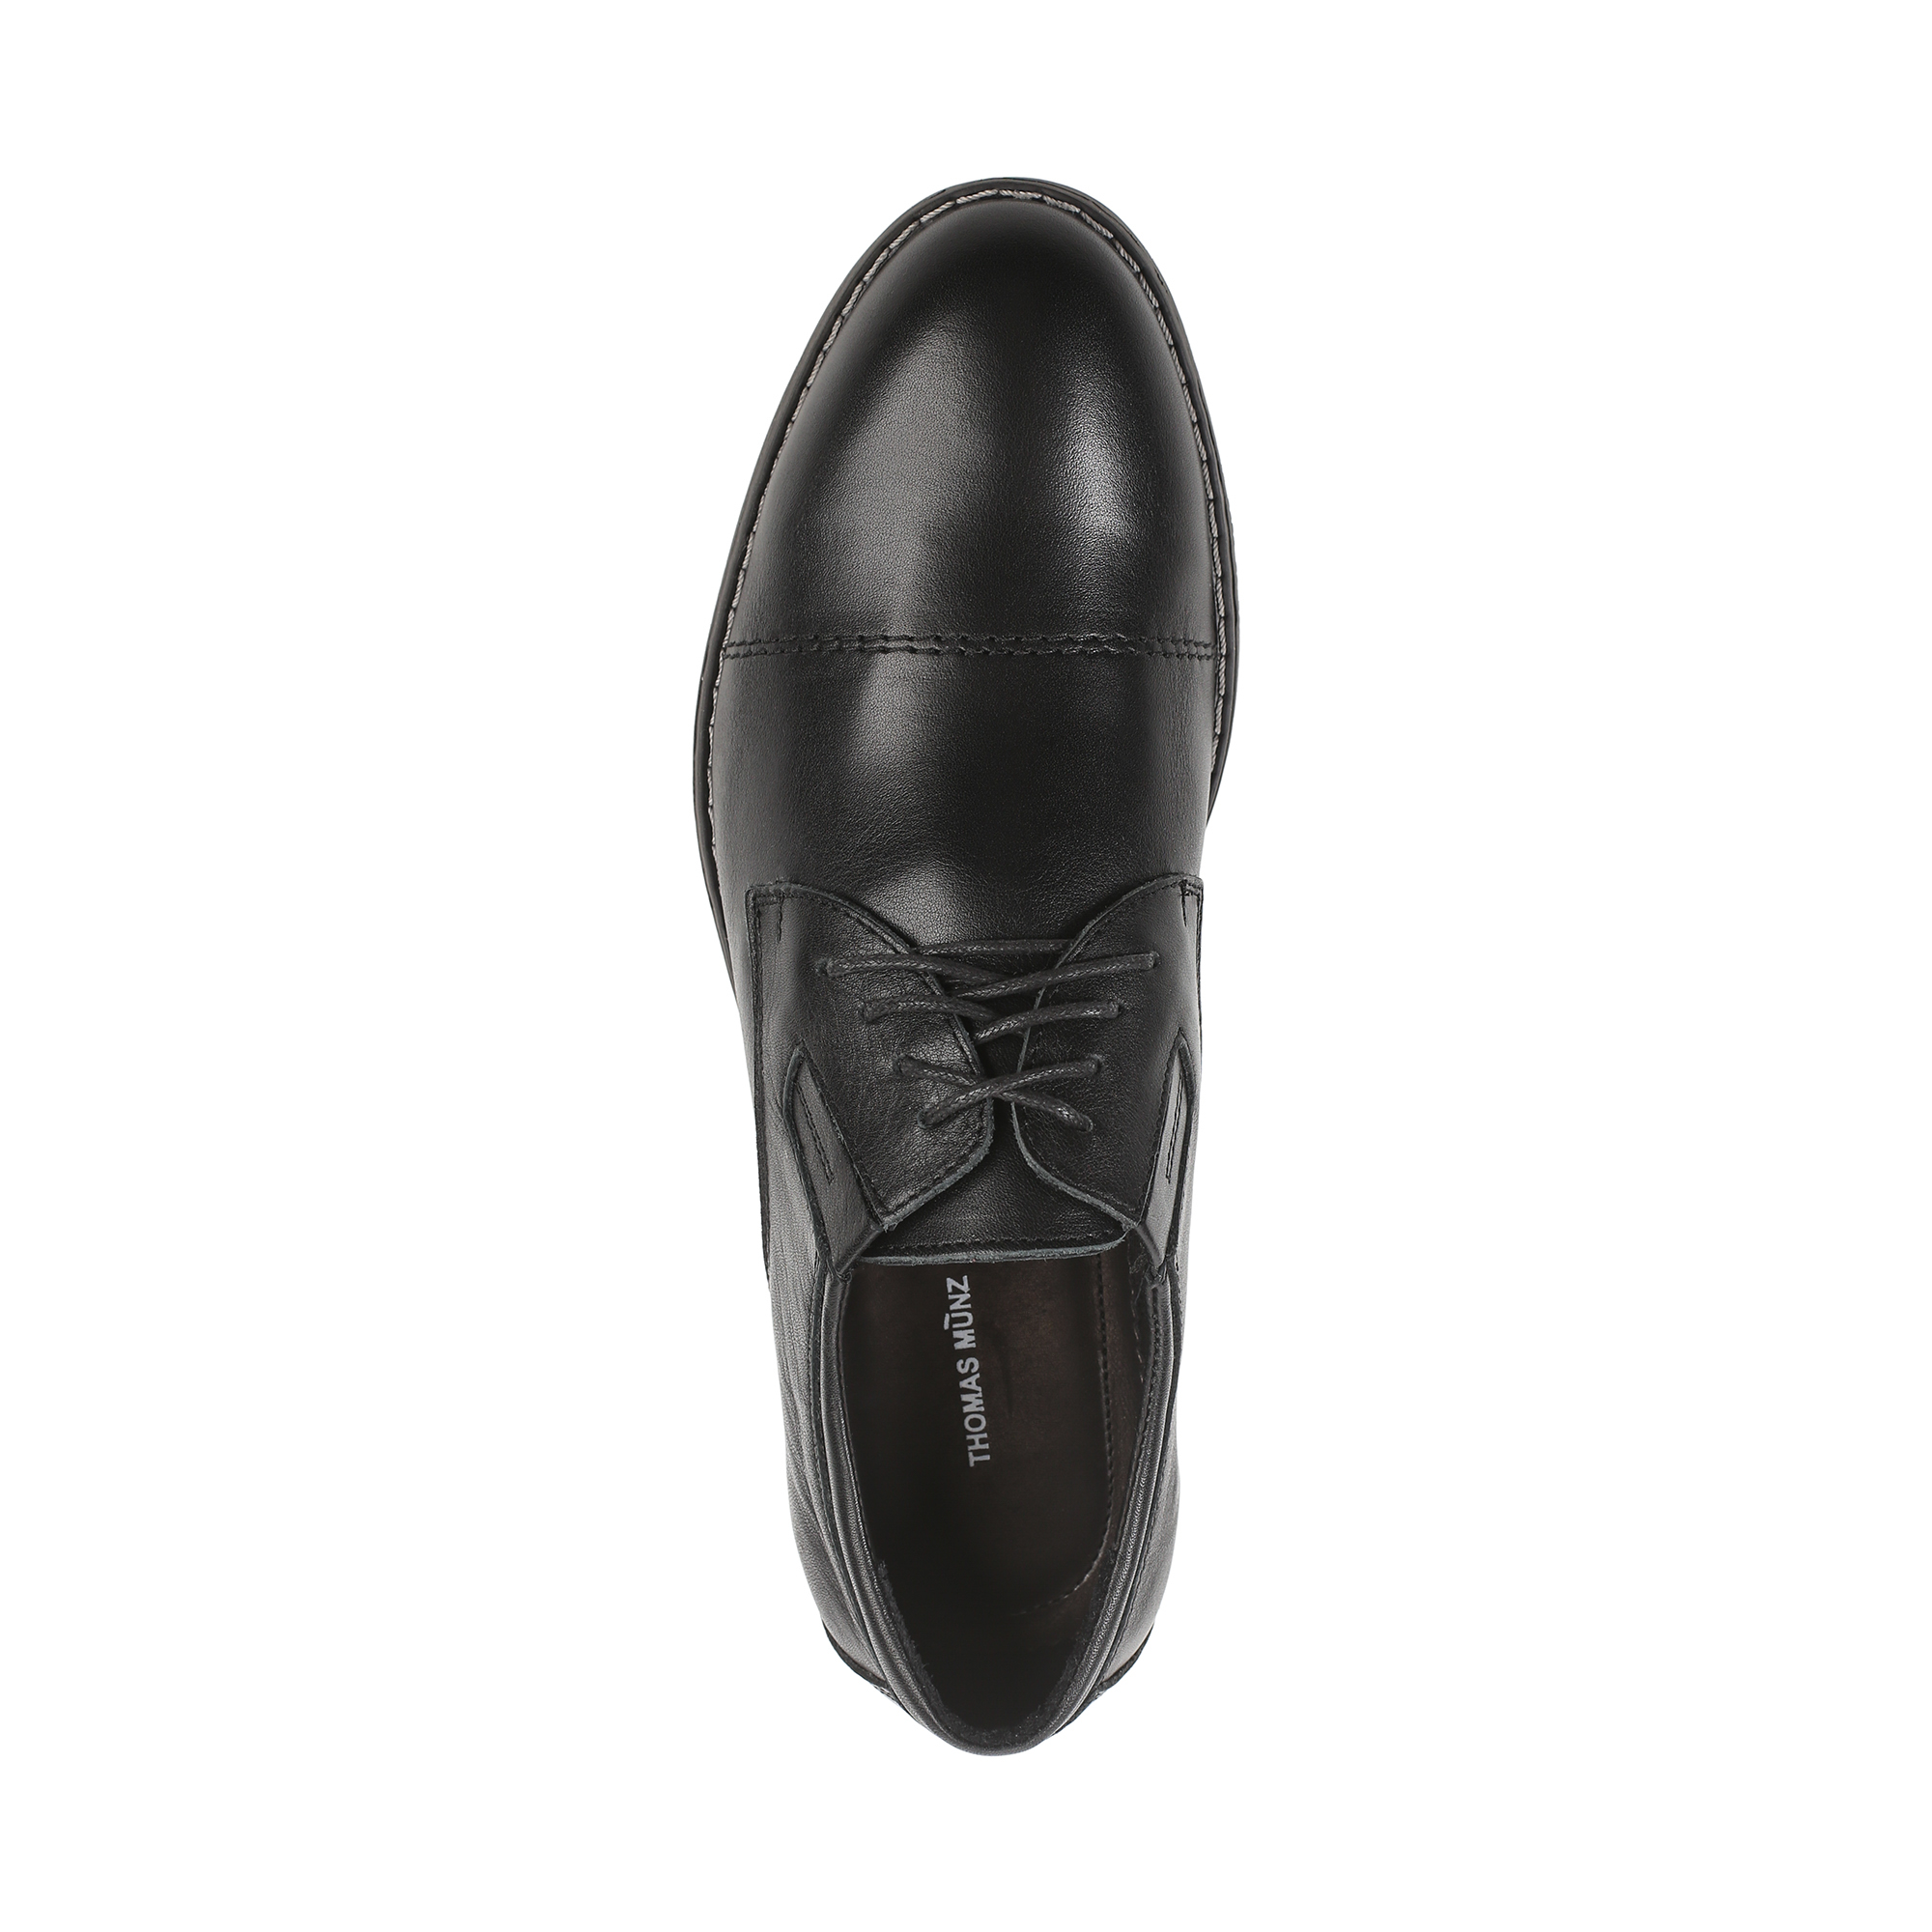 Туфли/полуботинки Thomas Munz 335-127A-1102, цвет черный, размер 41 - фото 5